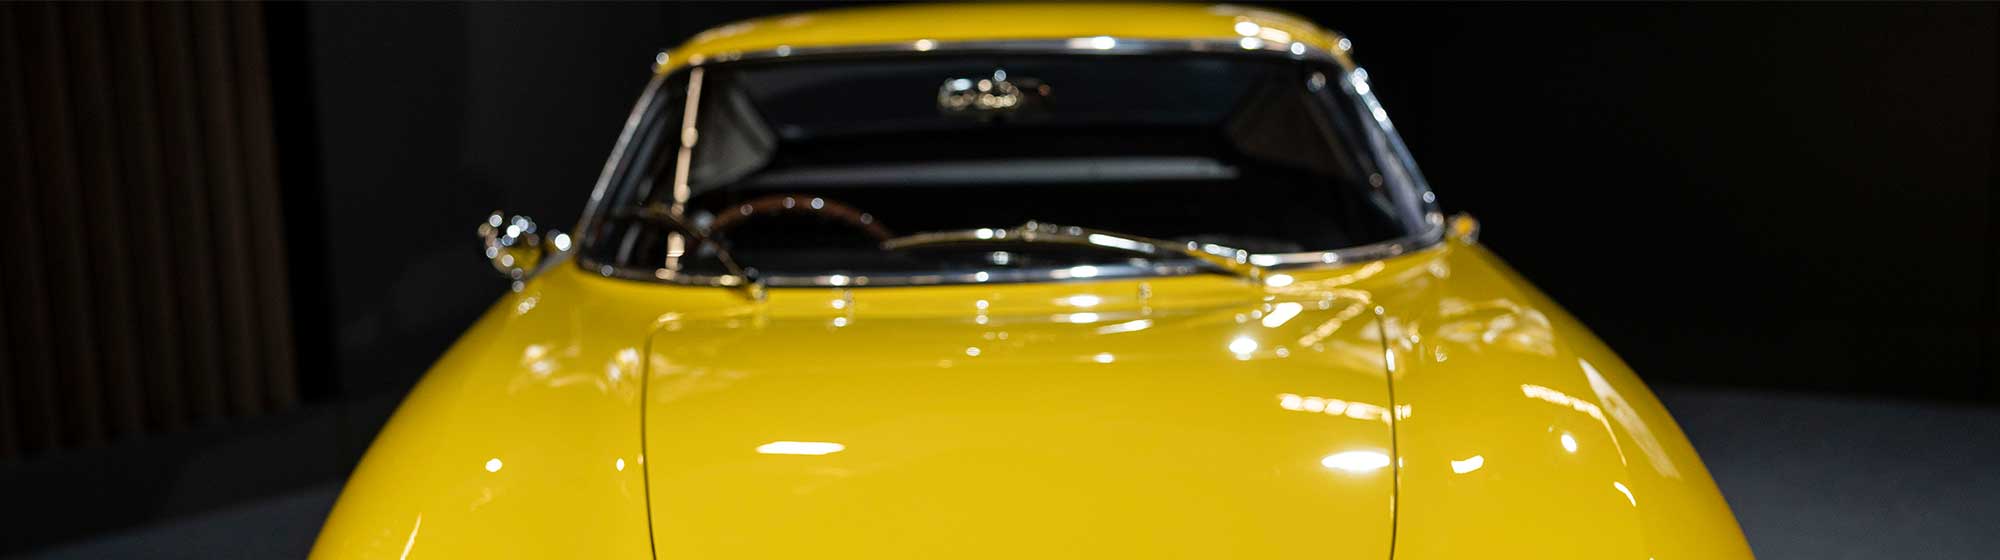 Photo d'une ferrari de collection de couleur jaune exposé lors de Rétromobile